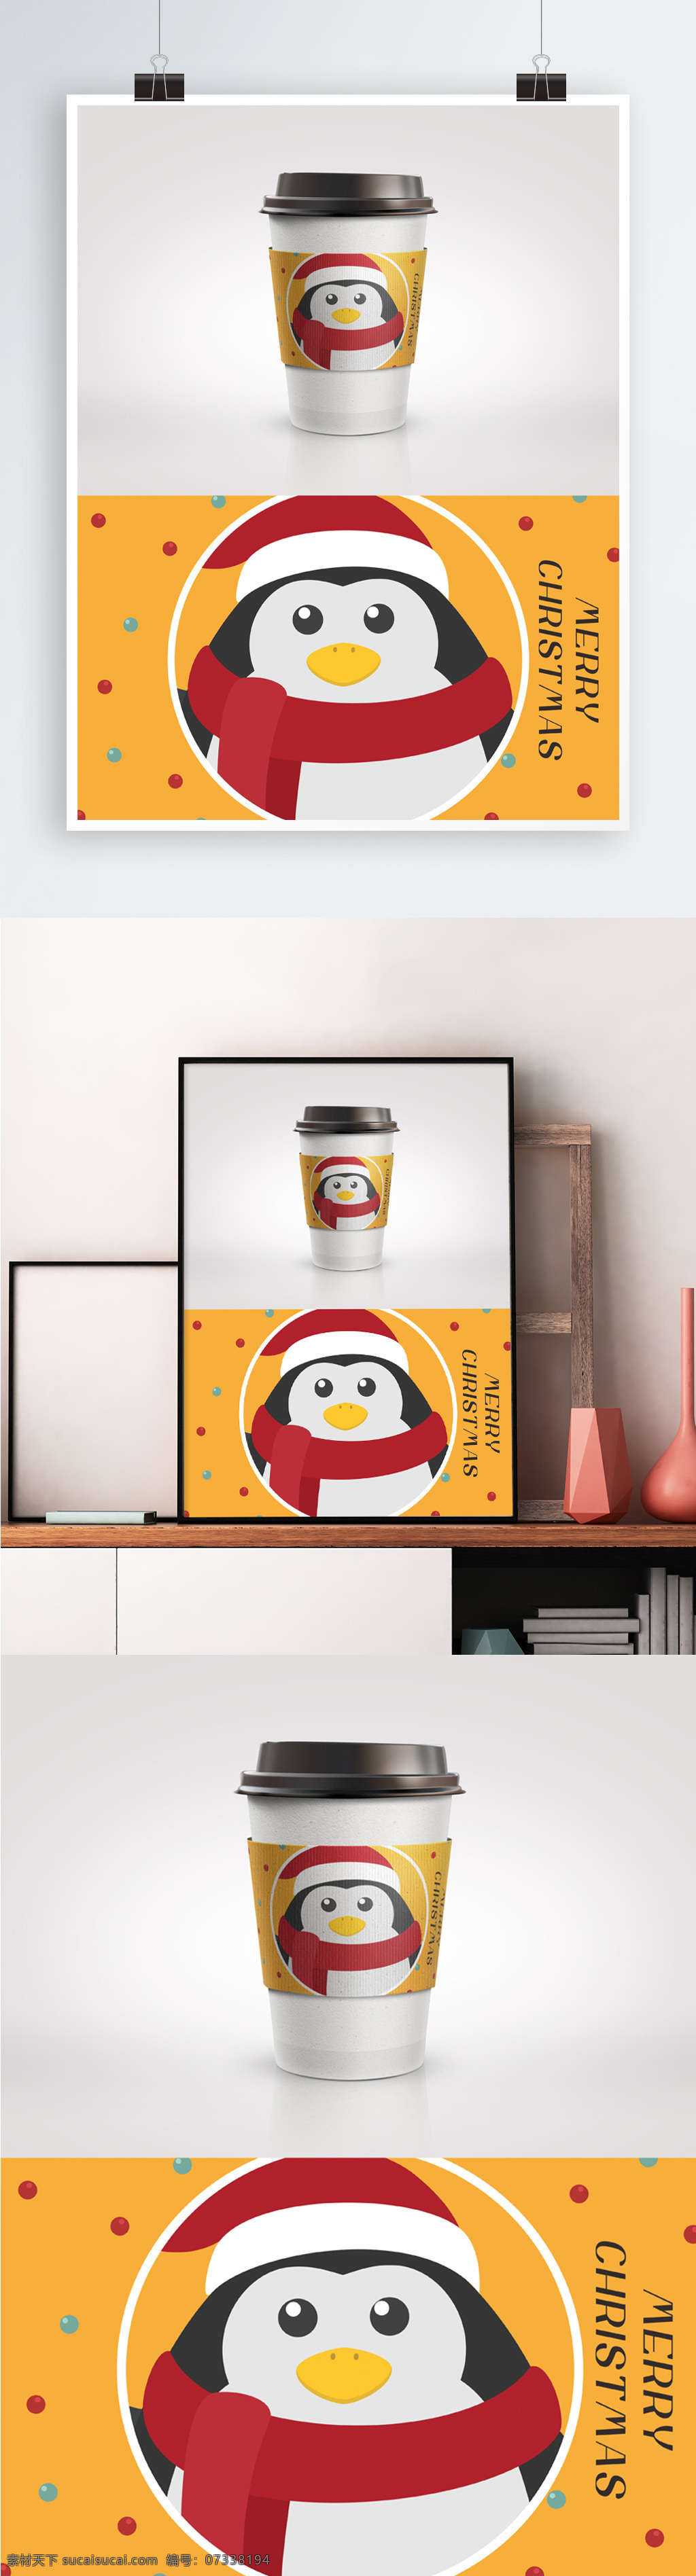 圣诞 可爱 黄色 企鹅 咖啡 杯杯 套 杯套 简约 咖啡杯 卡通 圣诞节